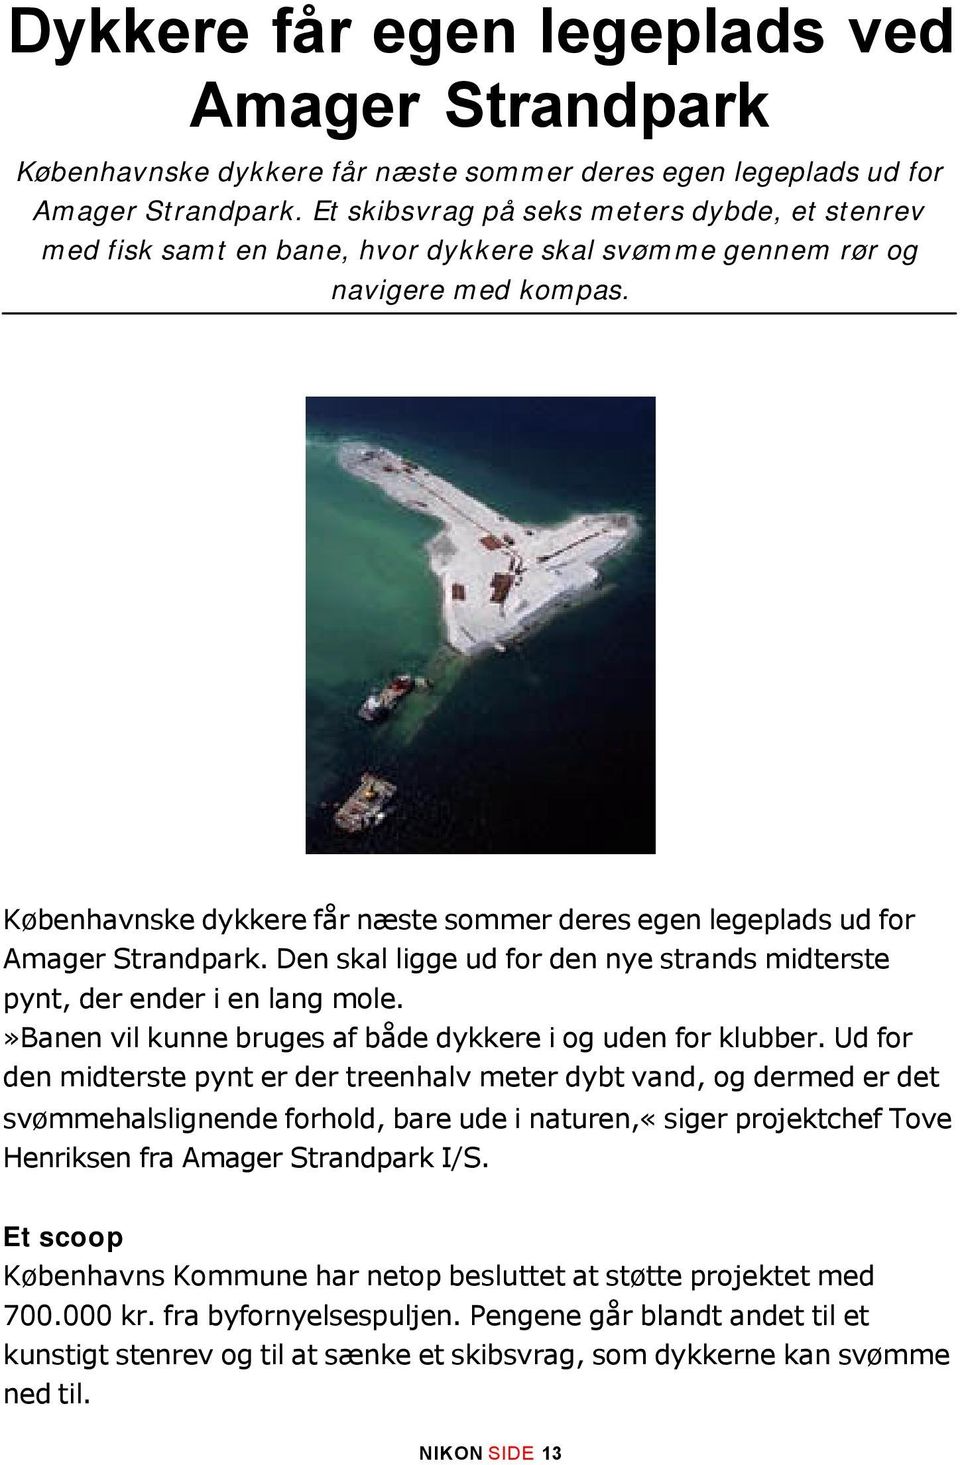 Københavnske dykkere får næste sommer deres egen legeplads ud for Amager Strandpark. Den skal ligge ud for den nye strands midterste pynt, der ender i en lang mole.